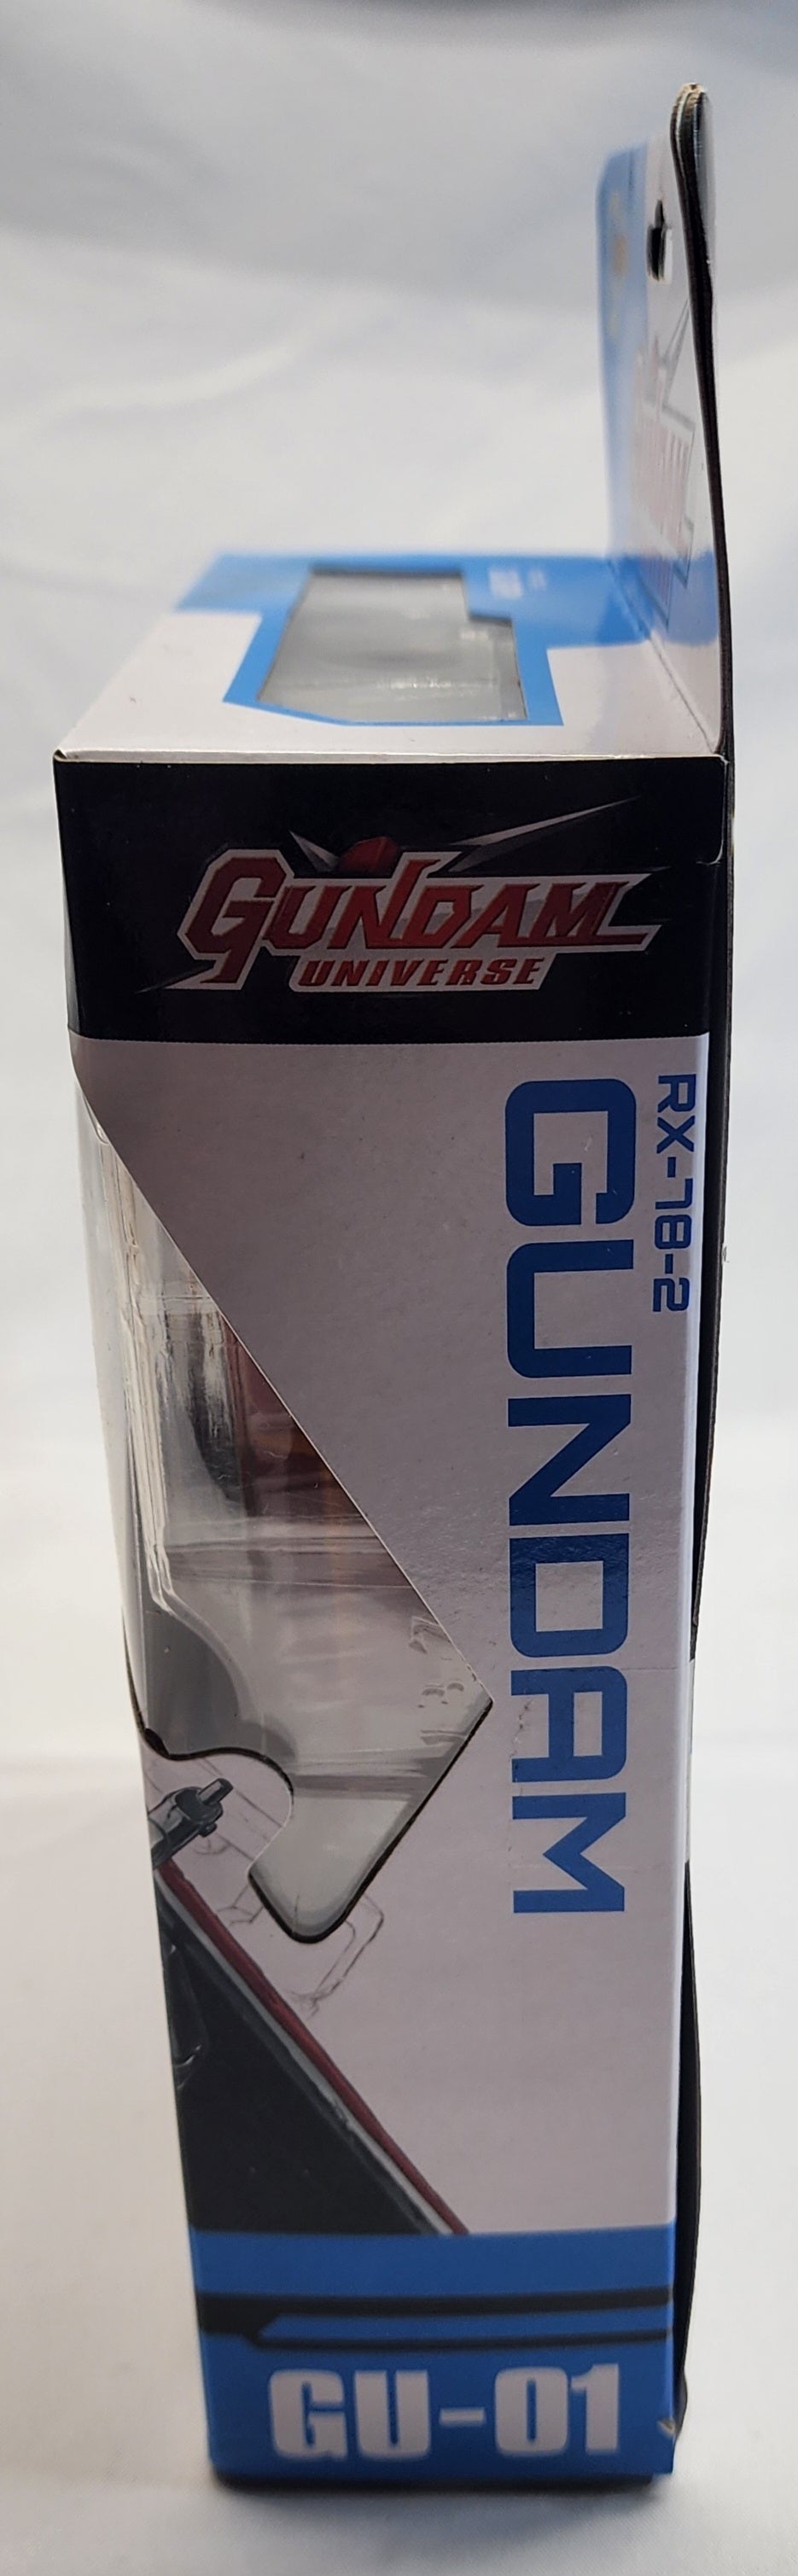 GUNDAM RX-78-2.  GU-01.  New!